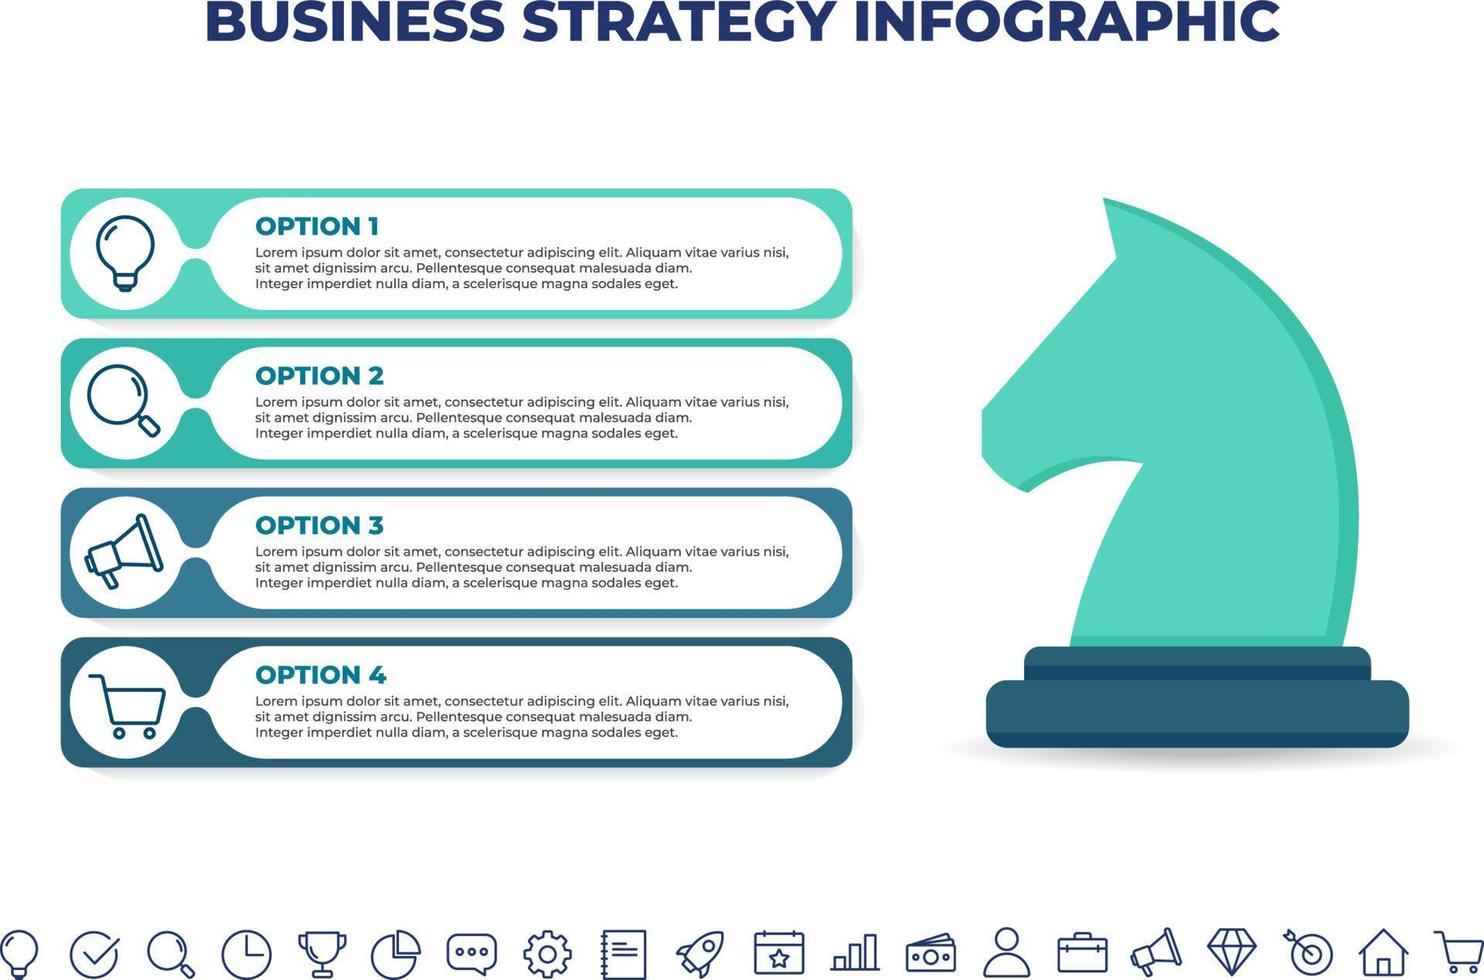 strategi infographic design template.business infographic mall för presentationer, banner, arbetsflödeslayout, processdiagram, flödesschema och hur det fungerar vektor